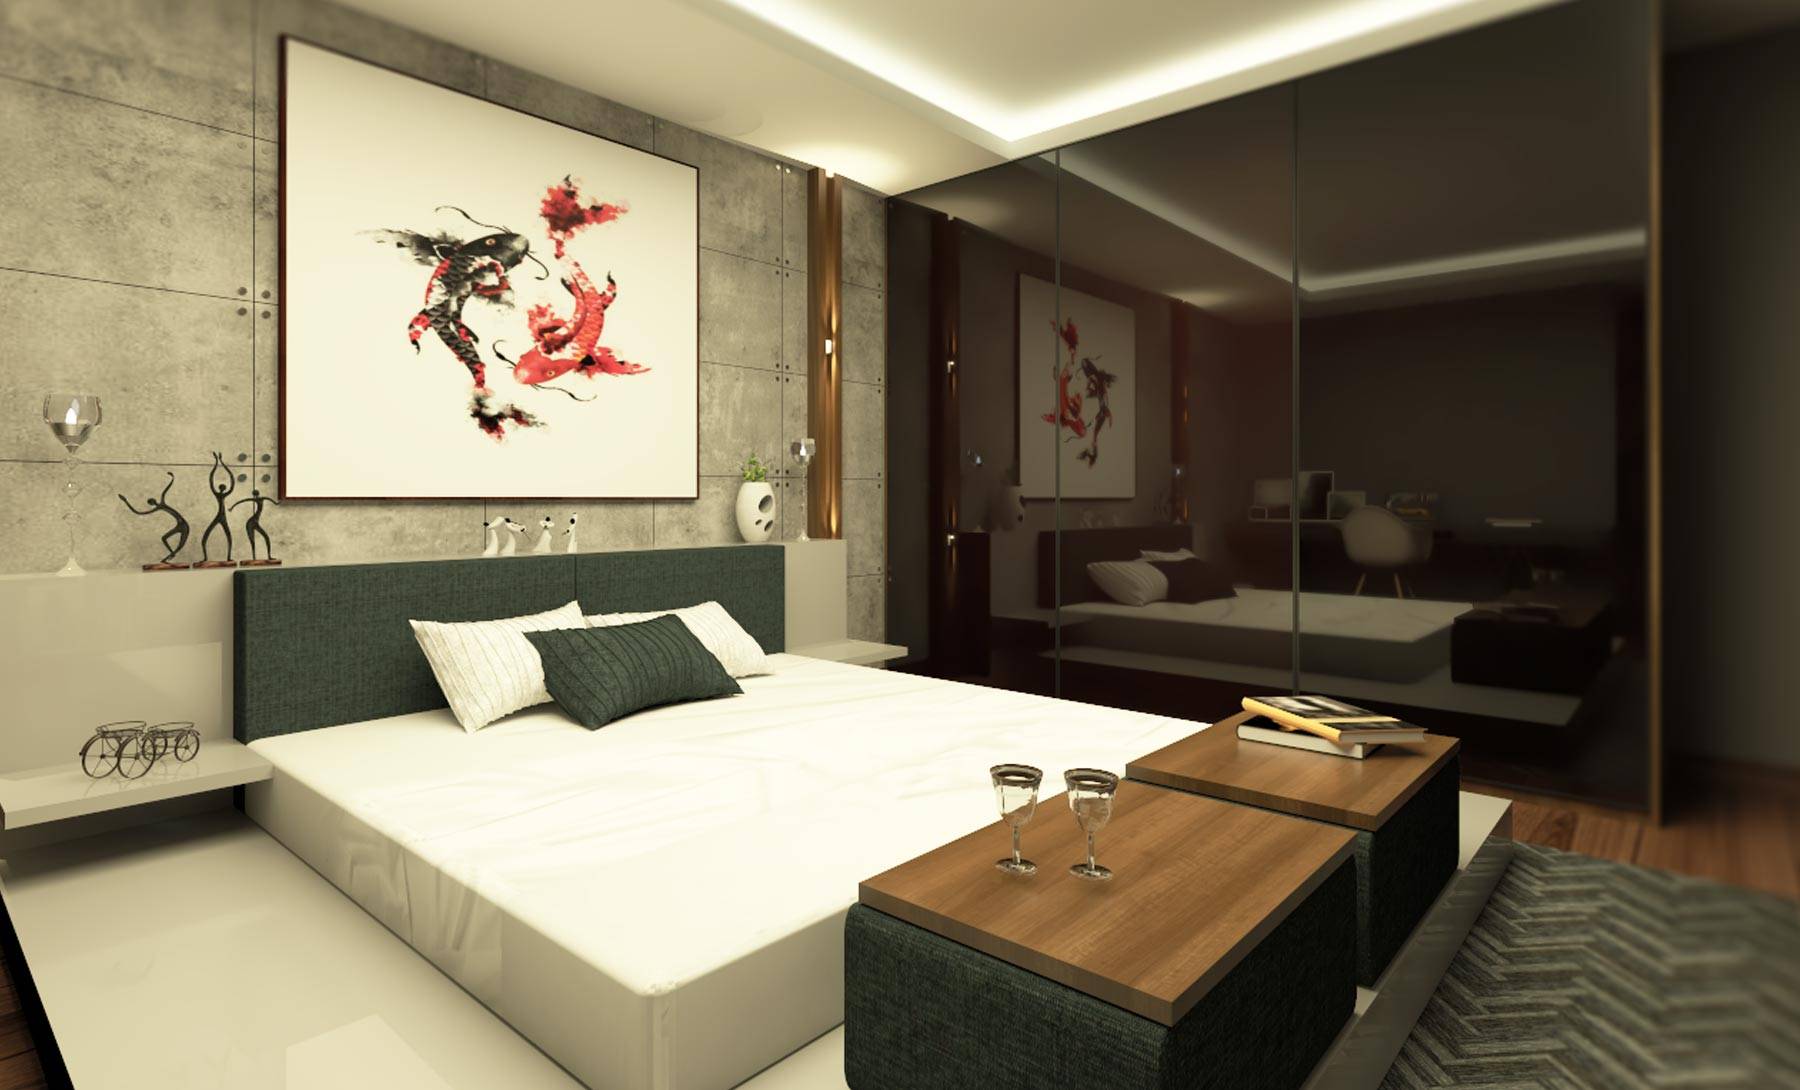 Kyrah Design,  Master Bedroom Interior Design